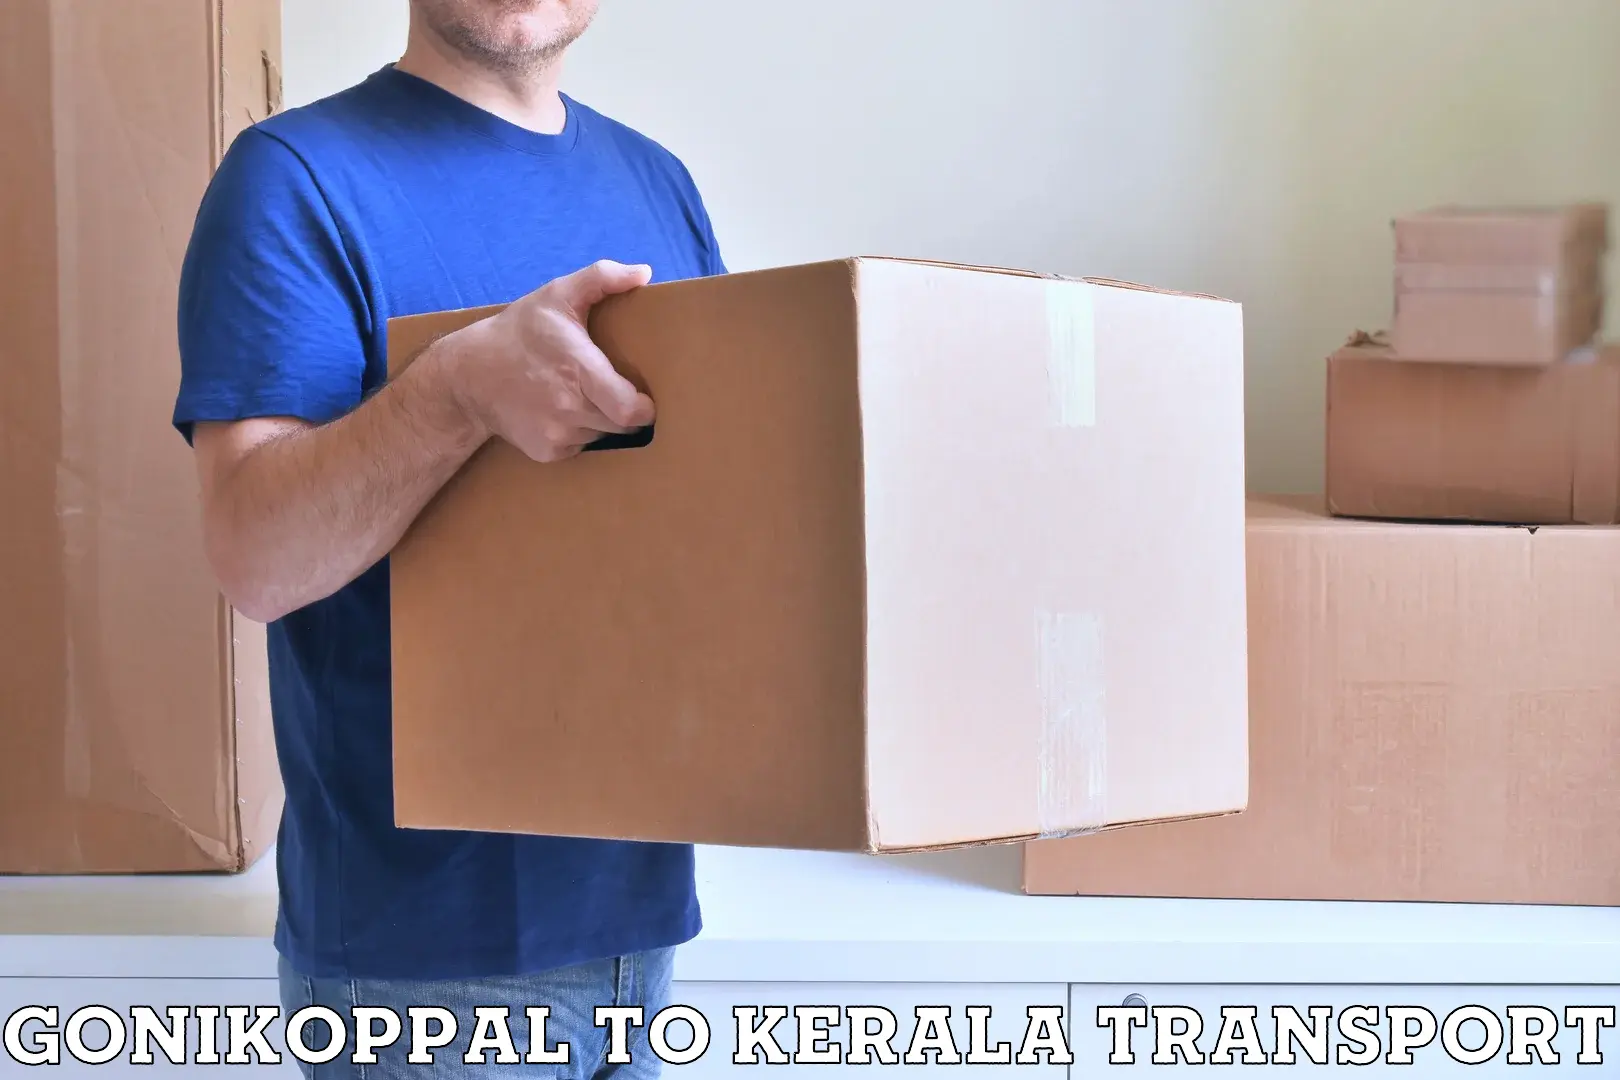 Transport shared services Gonikoppal to Idukki